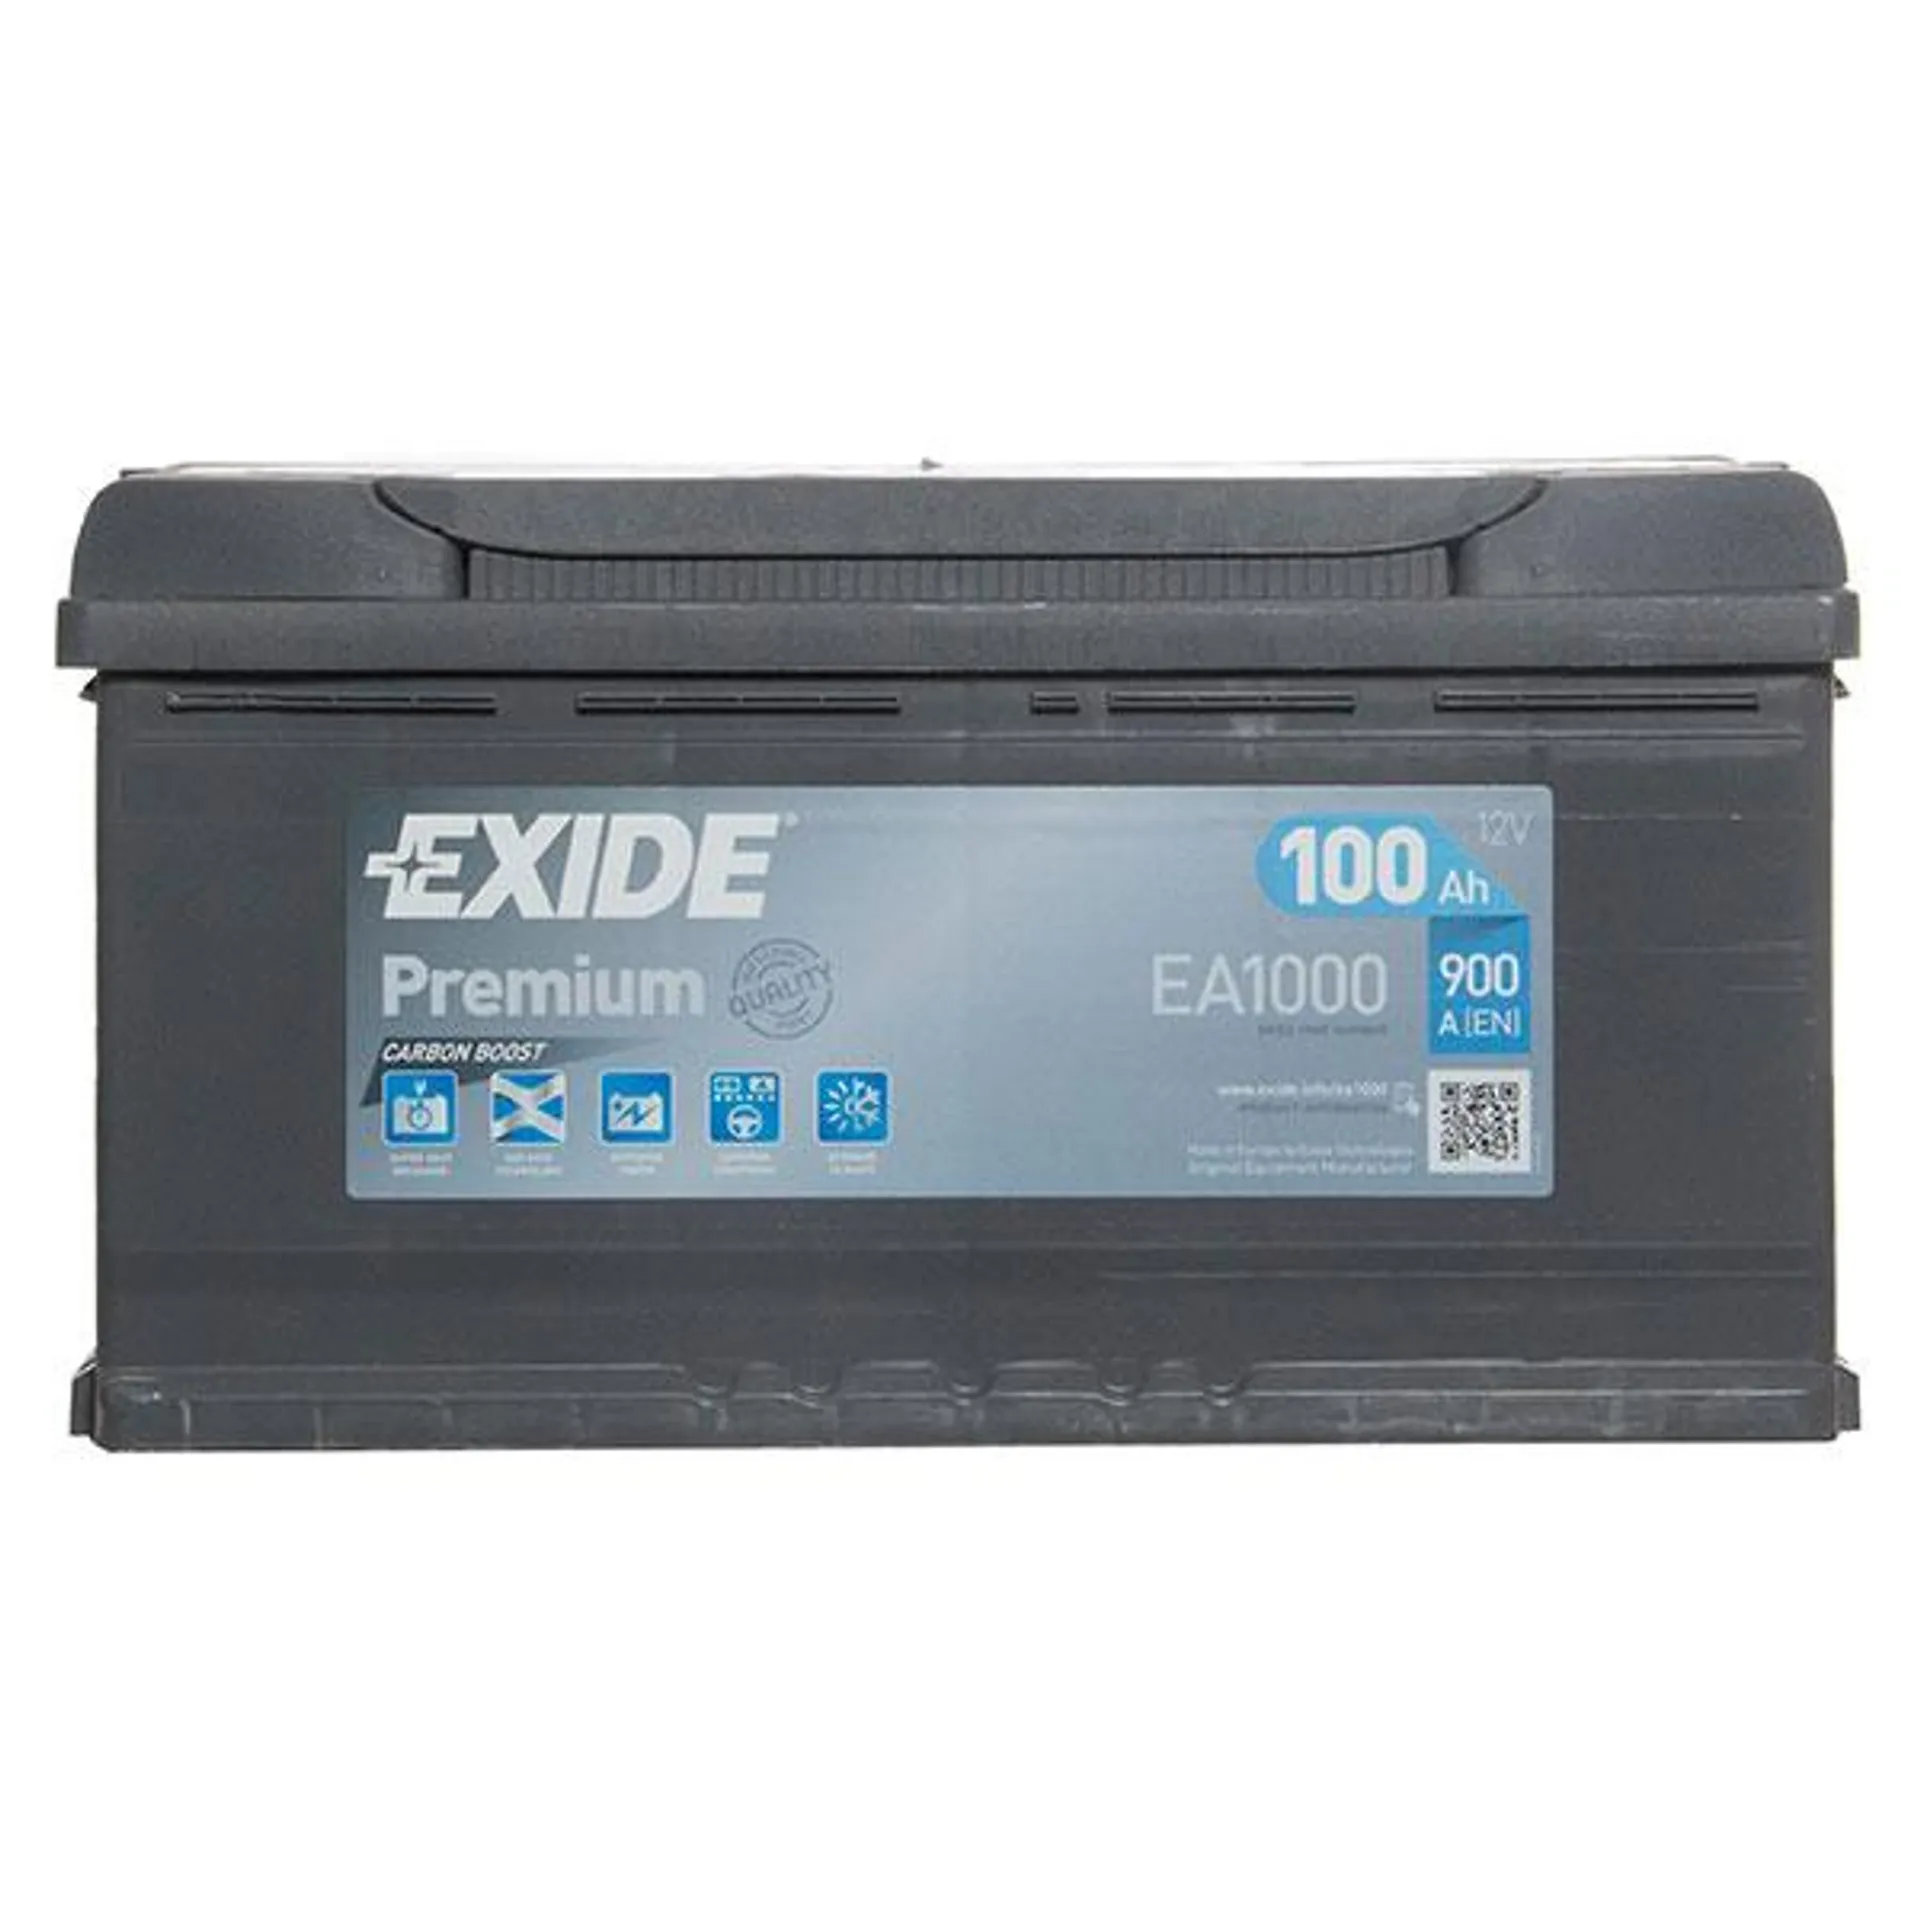 Exide 017 / 019 (100Ah) Car Battery - 5 Year Guarantee